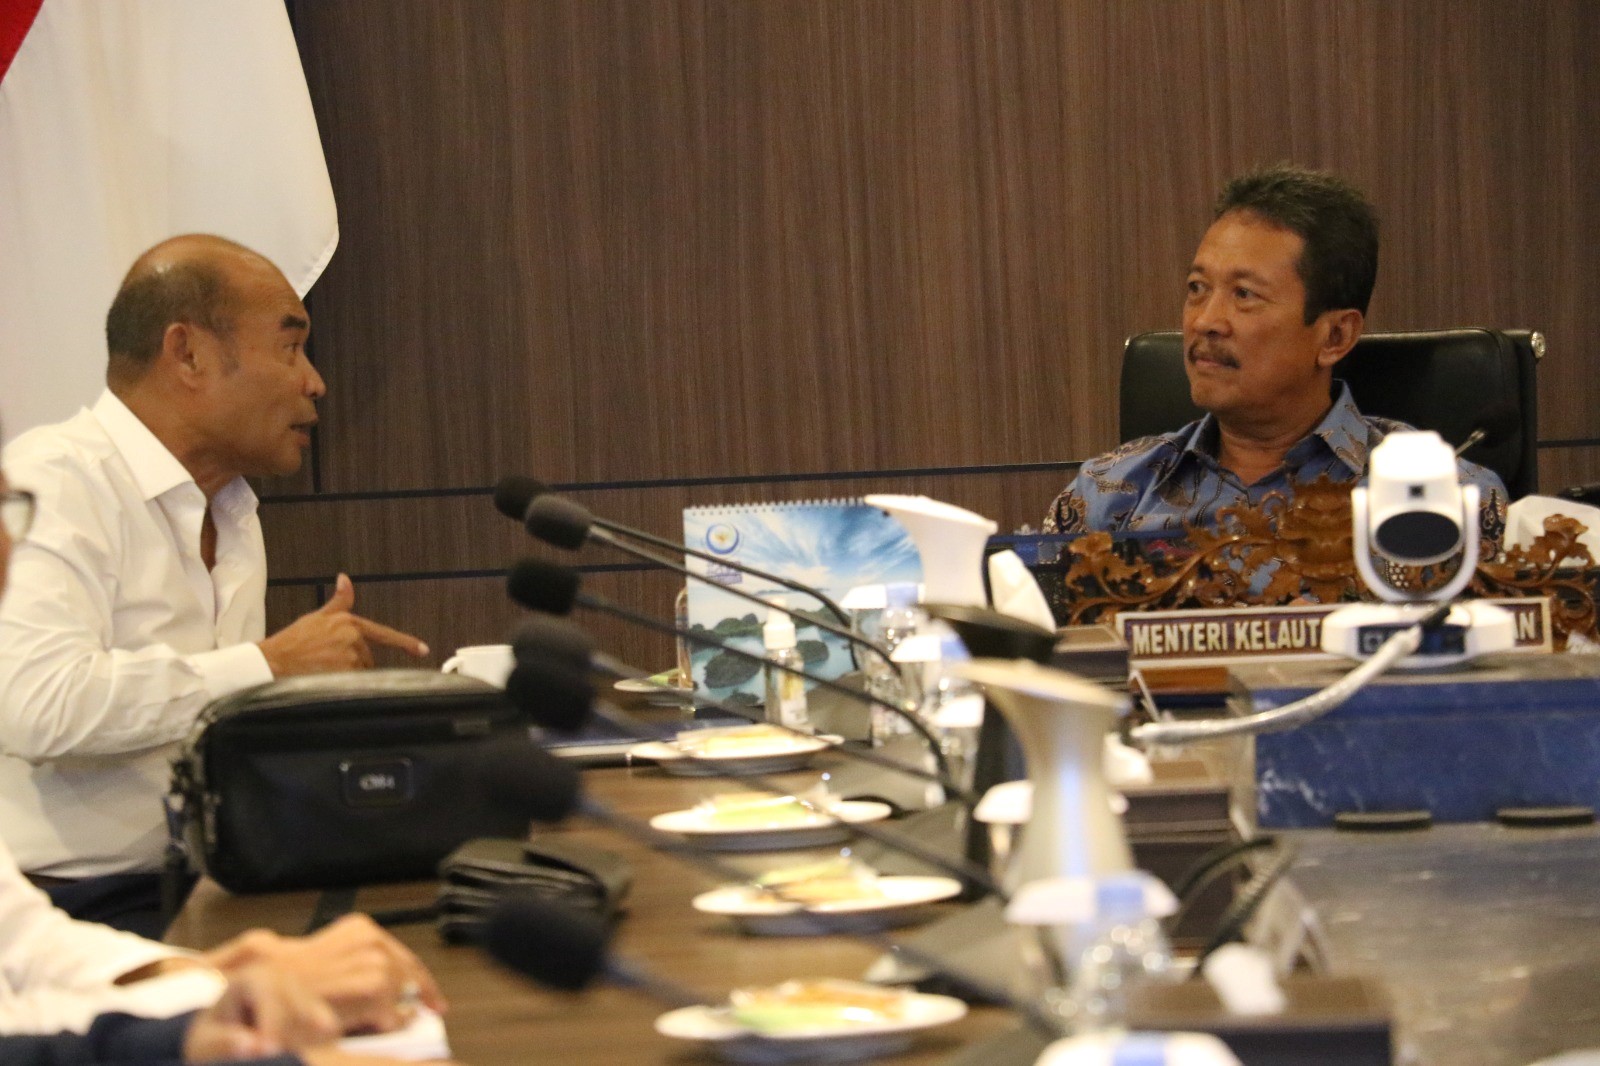 Menteri Trenggono Dorong Budidaya Udang Terintegrasi di Sumba Timur Jadi Kawasan Industri